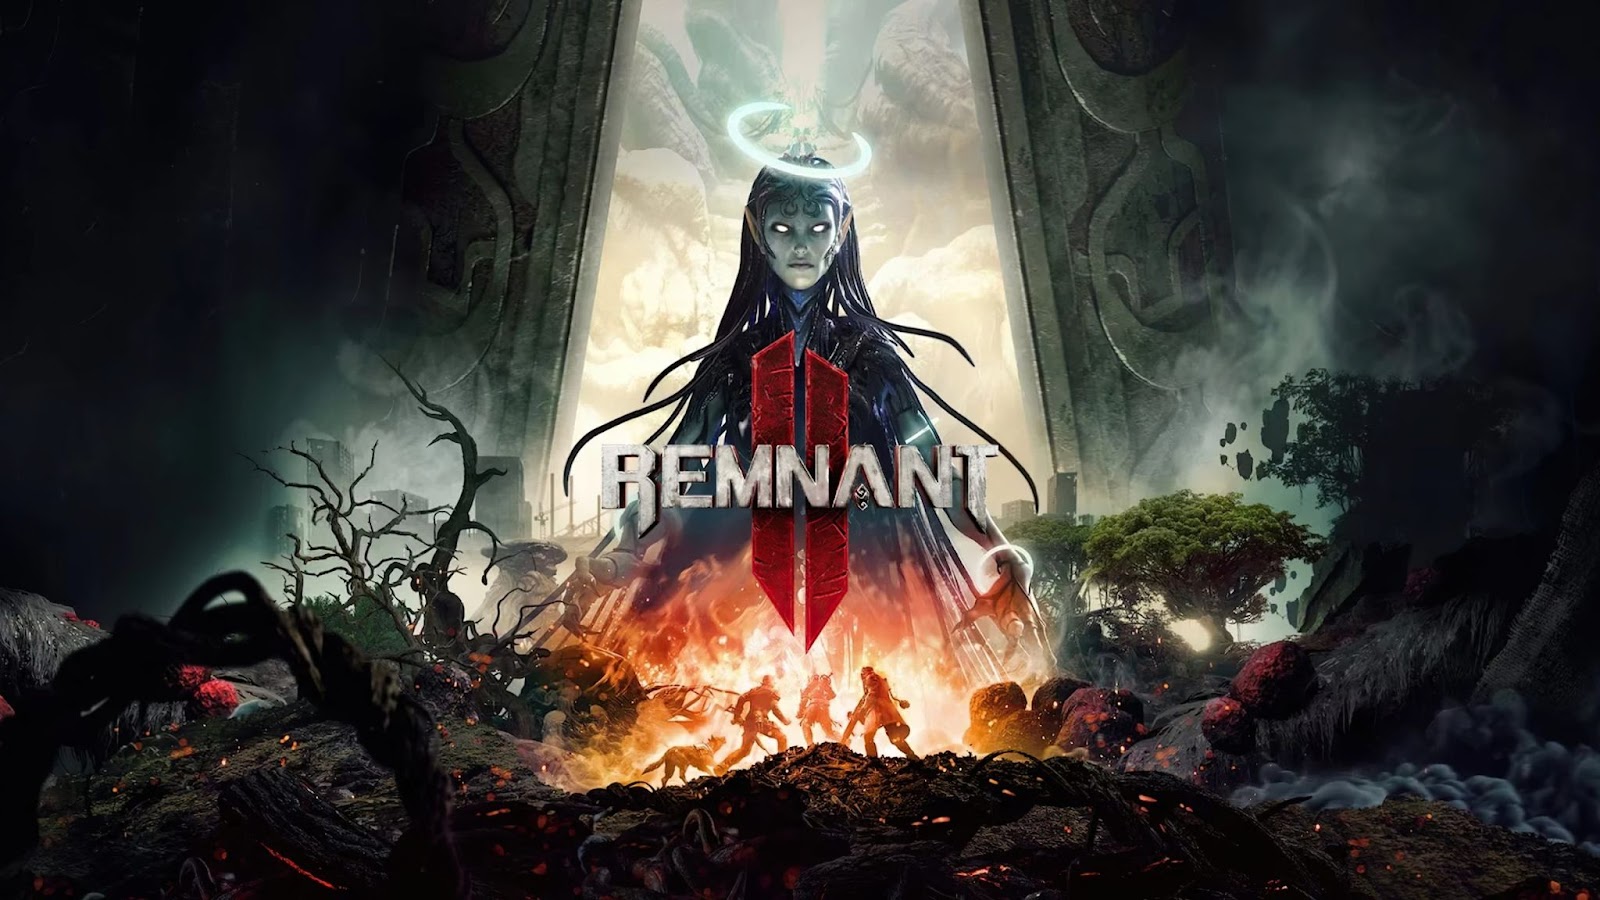 2. Remnant II